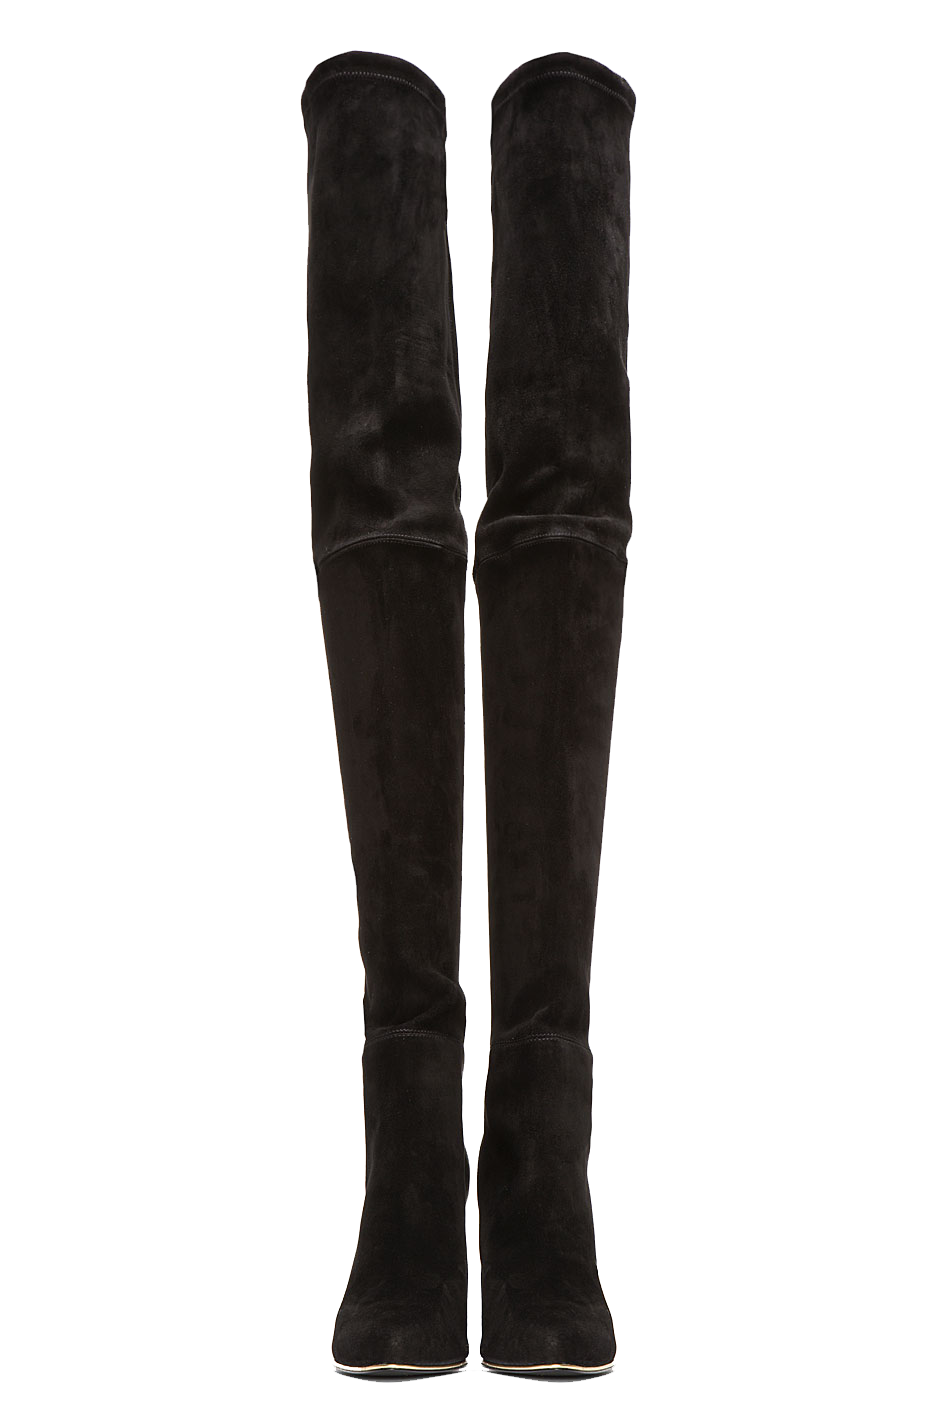 Balmain Black Suede Thigh-High Boots